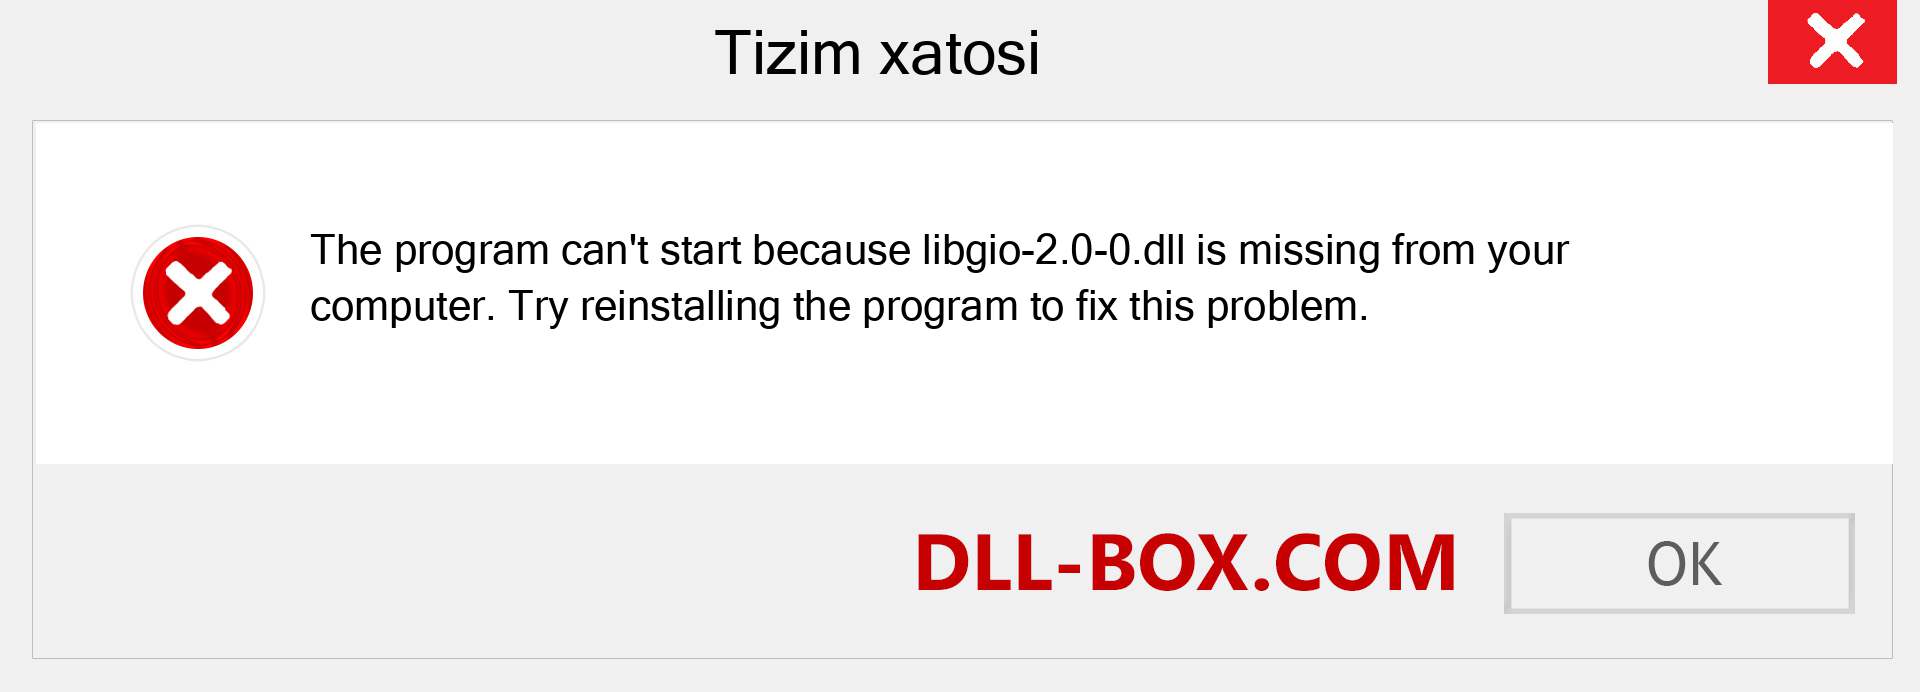 libgio-2.0-0.dll fayli yo'qolganmi?. Windows 7, 8, 10 uchun yuklab olish - Windowsda libgio-2.0-0 dll etishmayotgan xatoni tuzating, rasmlar, rasmlar